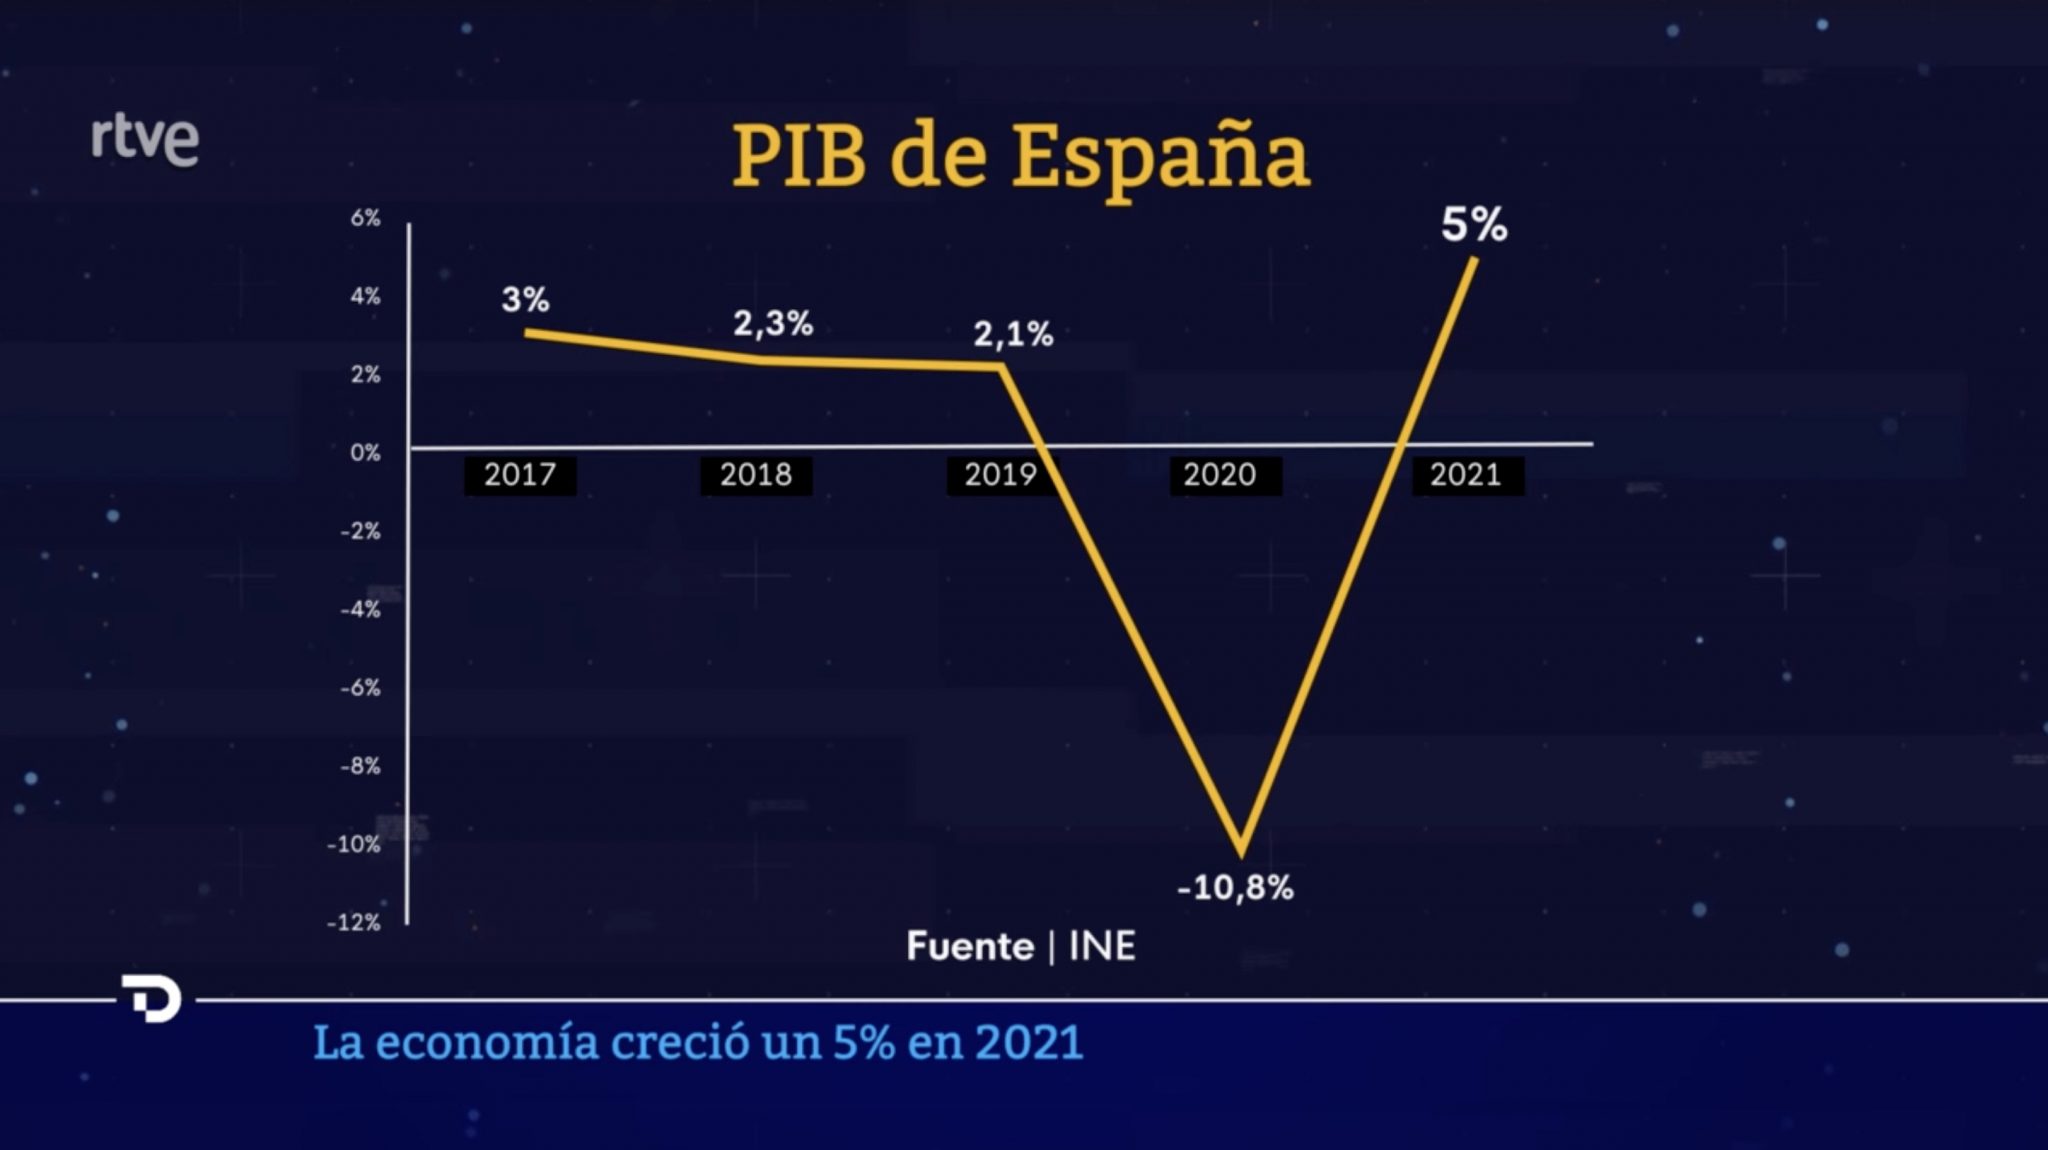 El Telediario de TVE ‘dispara’ el PIB de España con un gráfico que distorsiona la realidad